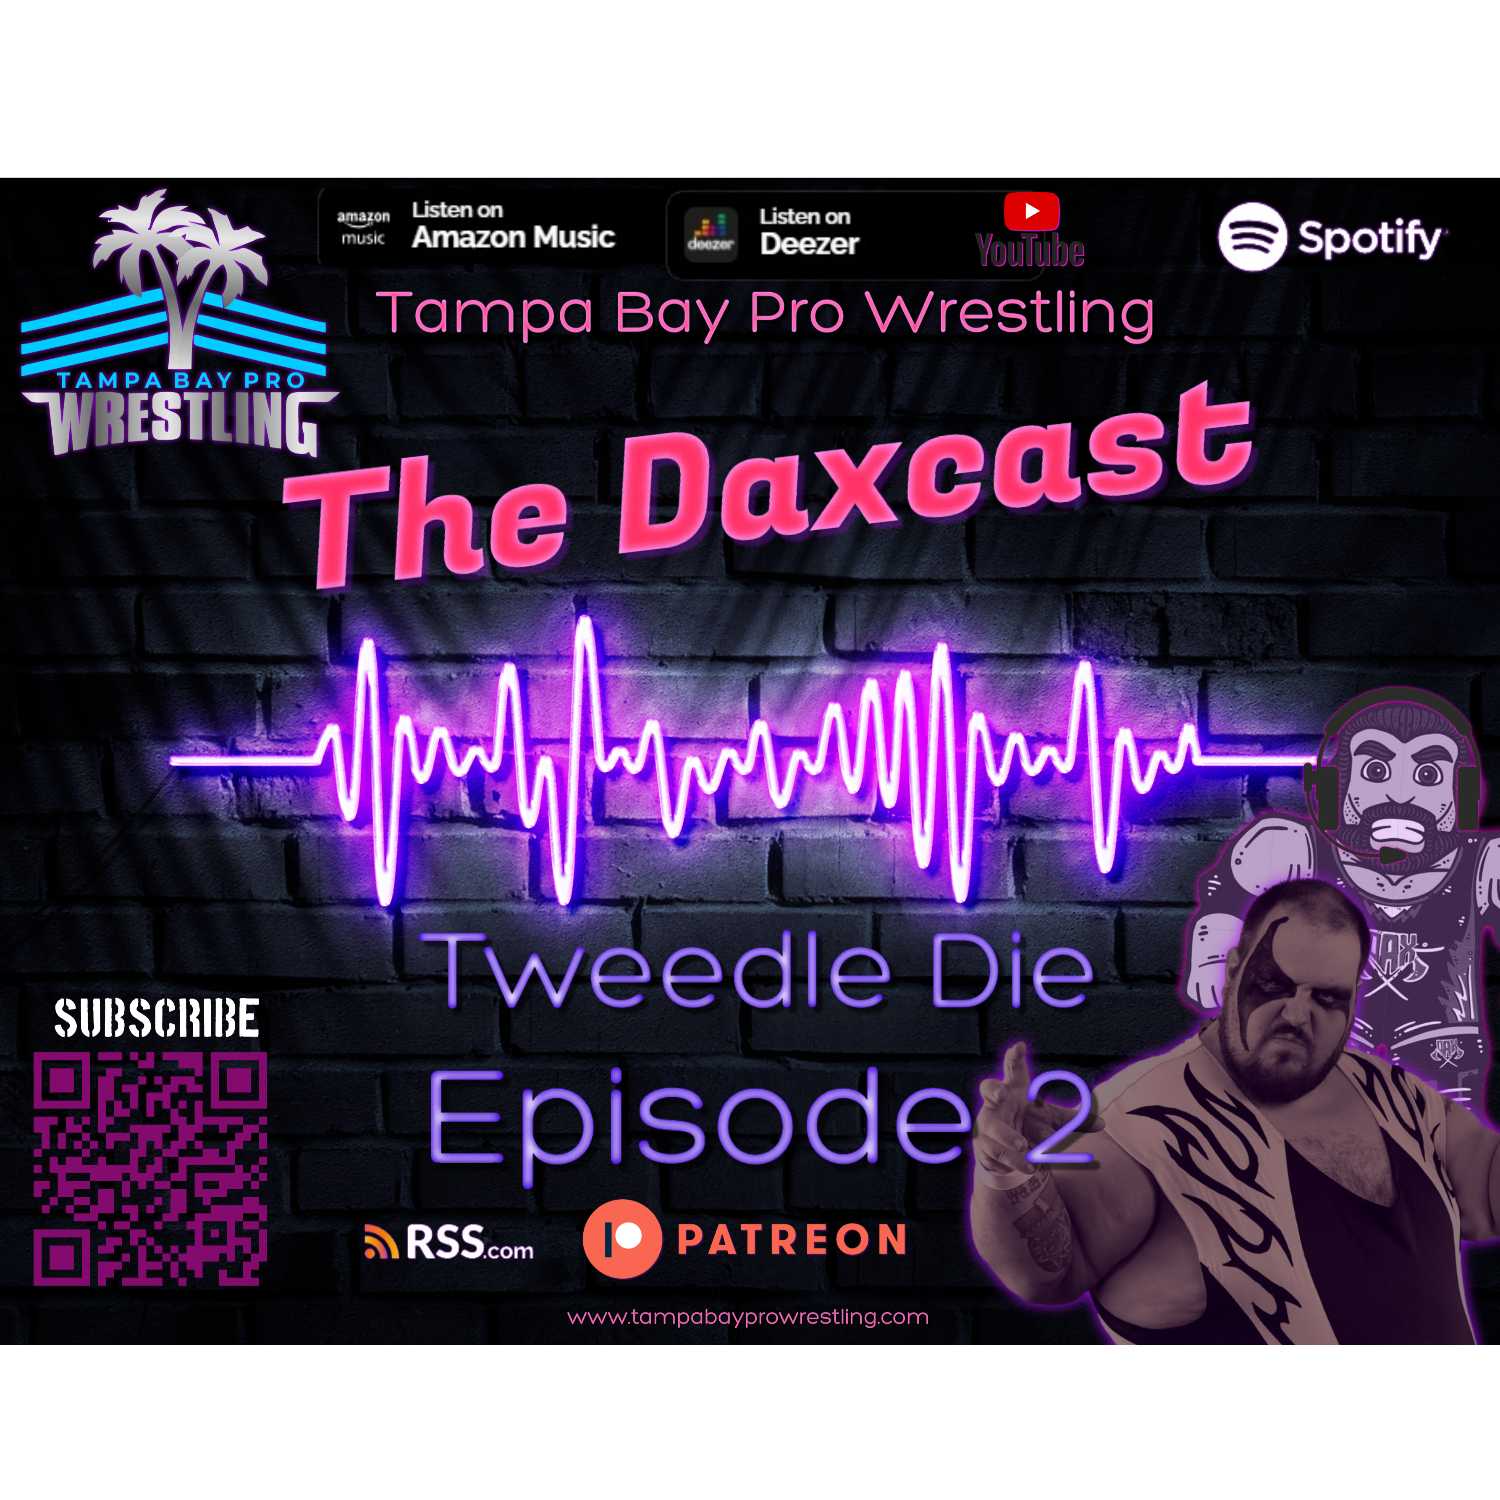 The Daxcast - ep 2 - Tweedle Die